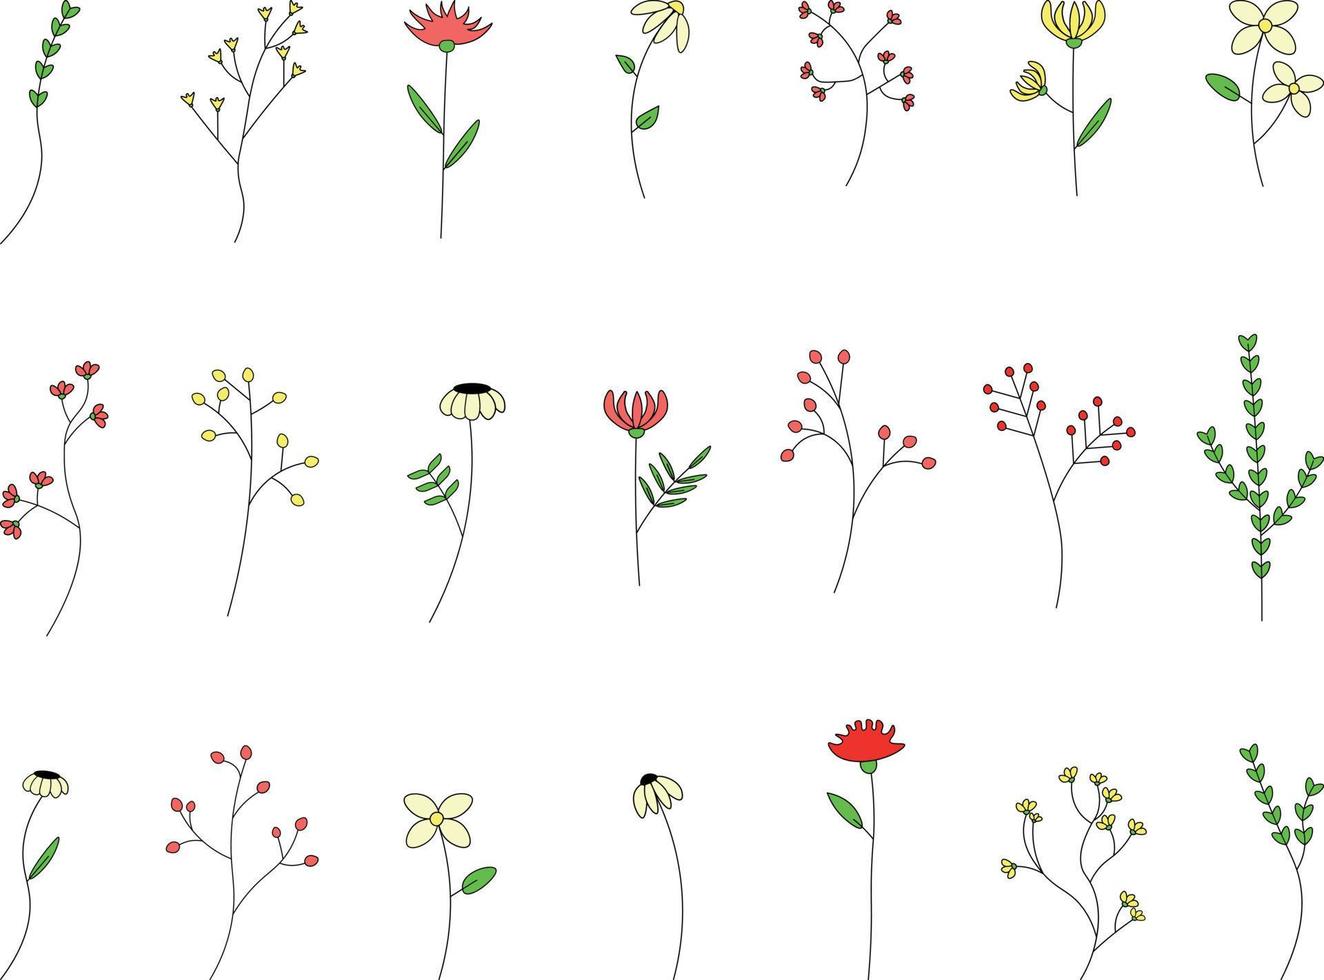 sommarblommor set. svart och vit doodle illustration isolerad på vit bakgrund. ange doodles av växter och blommor illustration vektor